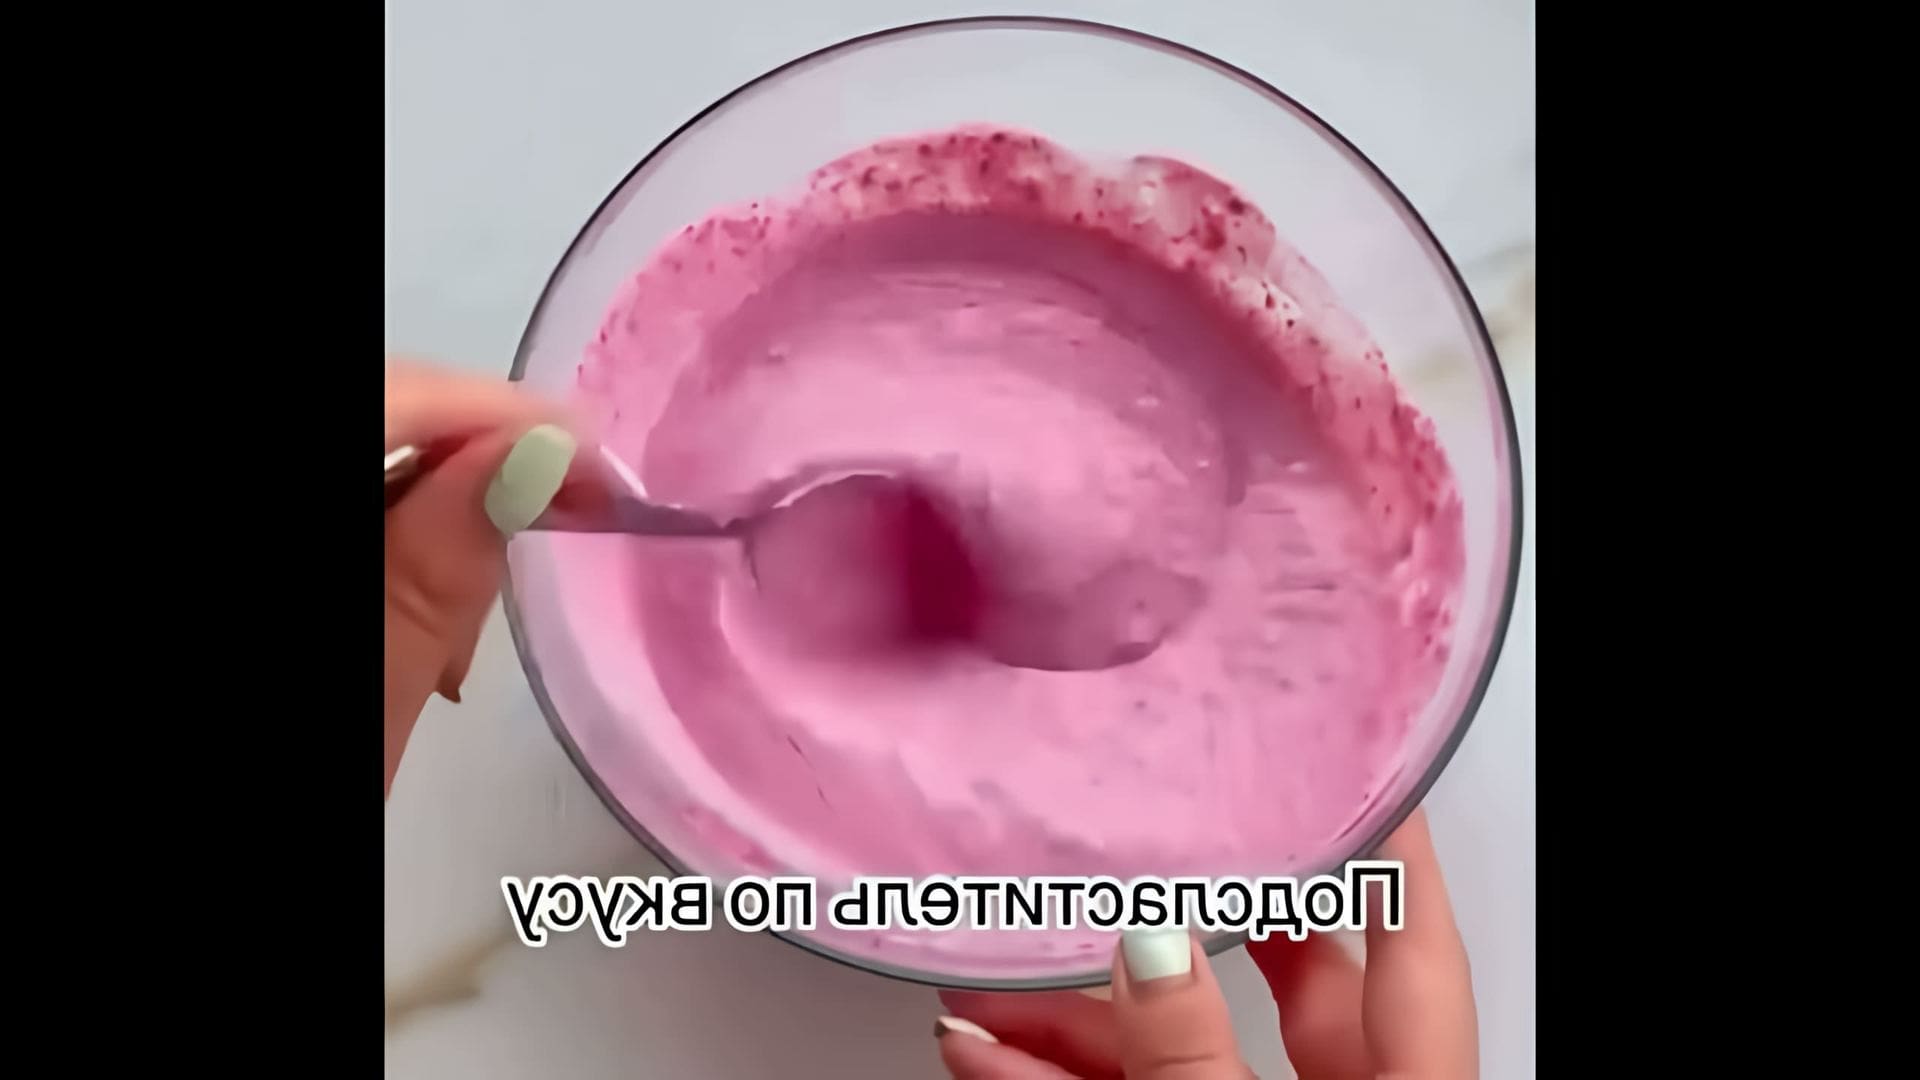 В этом видео демонстрируется рецепт малинового суфле, который является простым и легким летним десертом